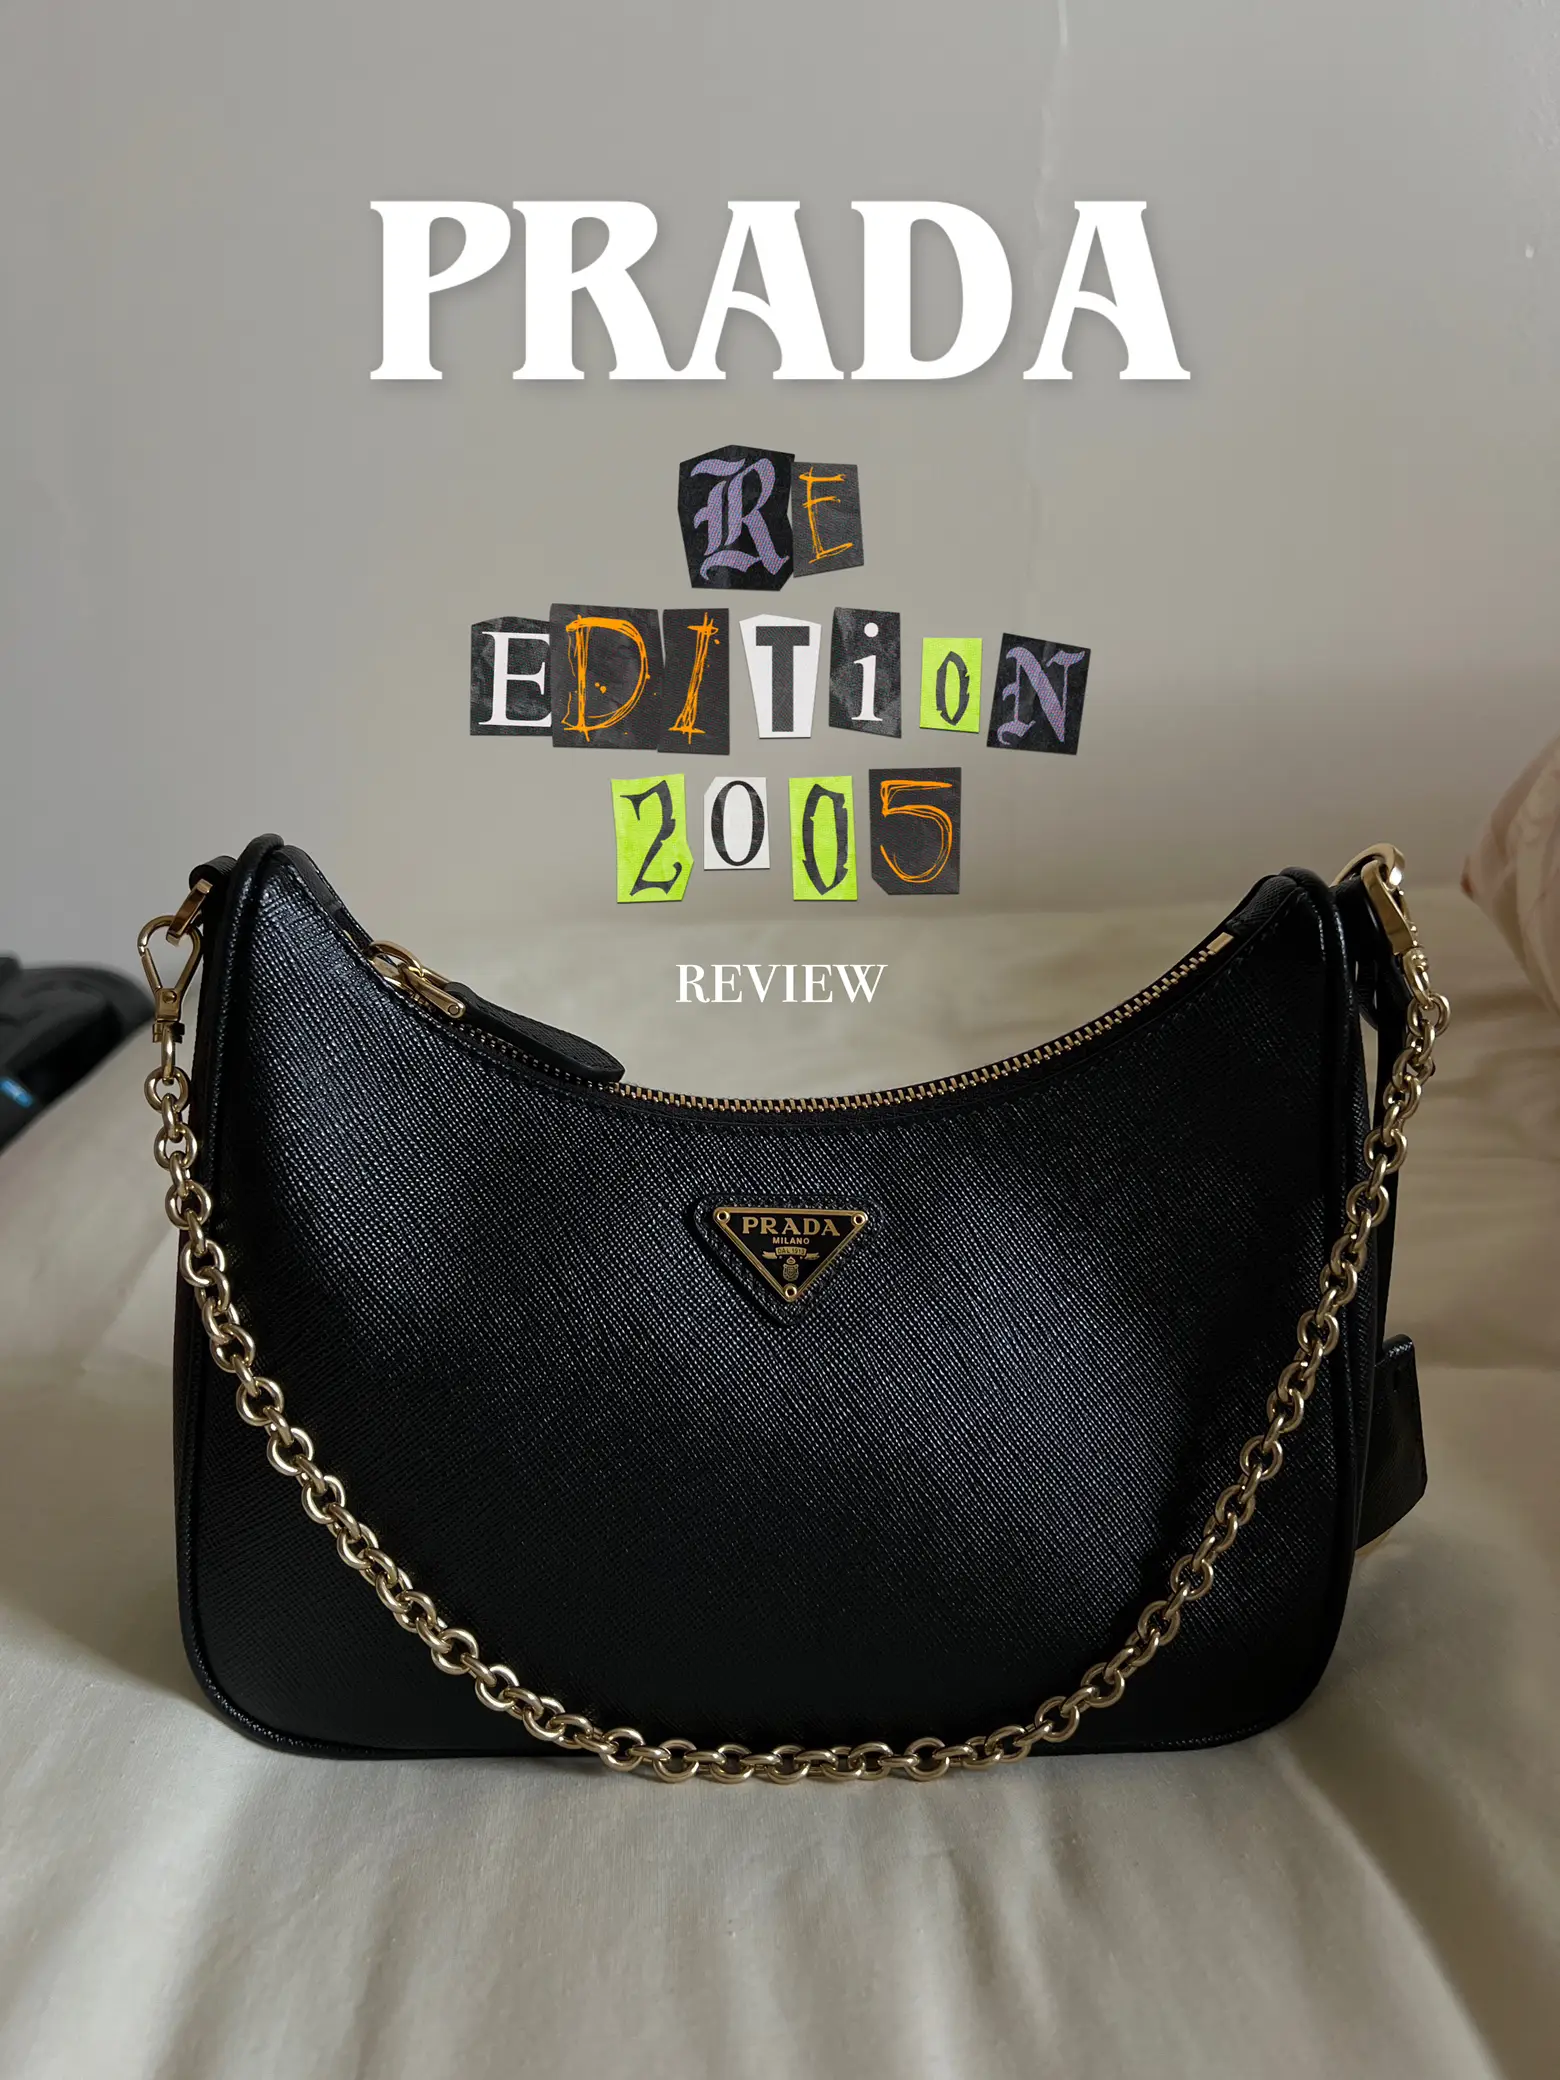 Prada Re-Edition 2005 Review !✨🫶🏻